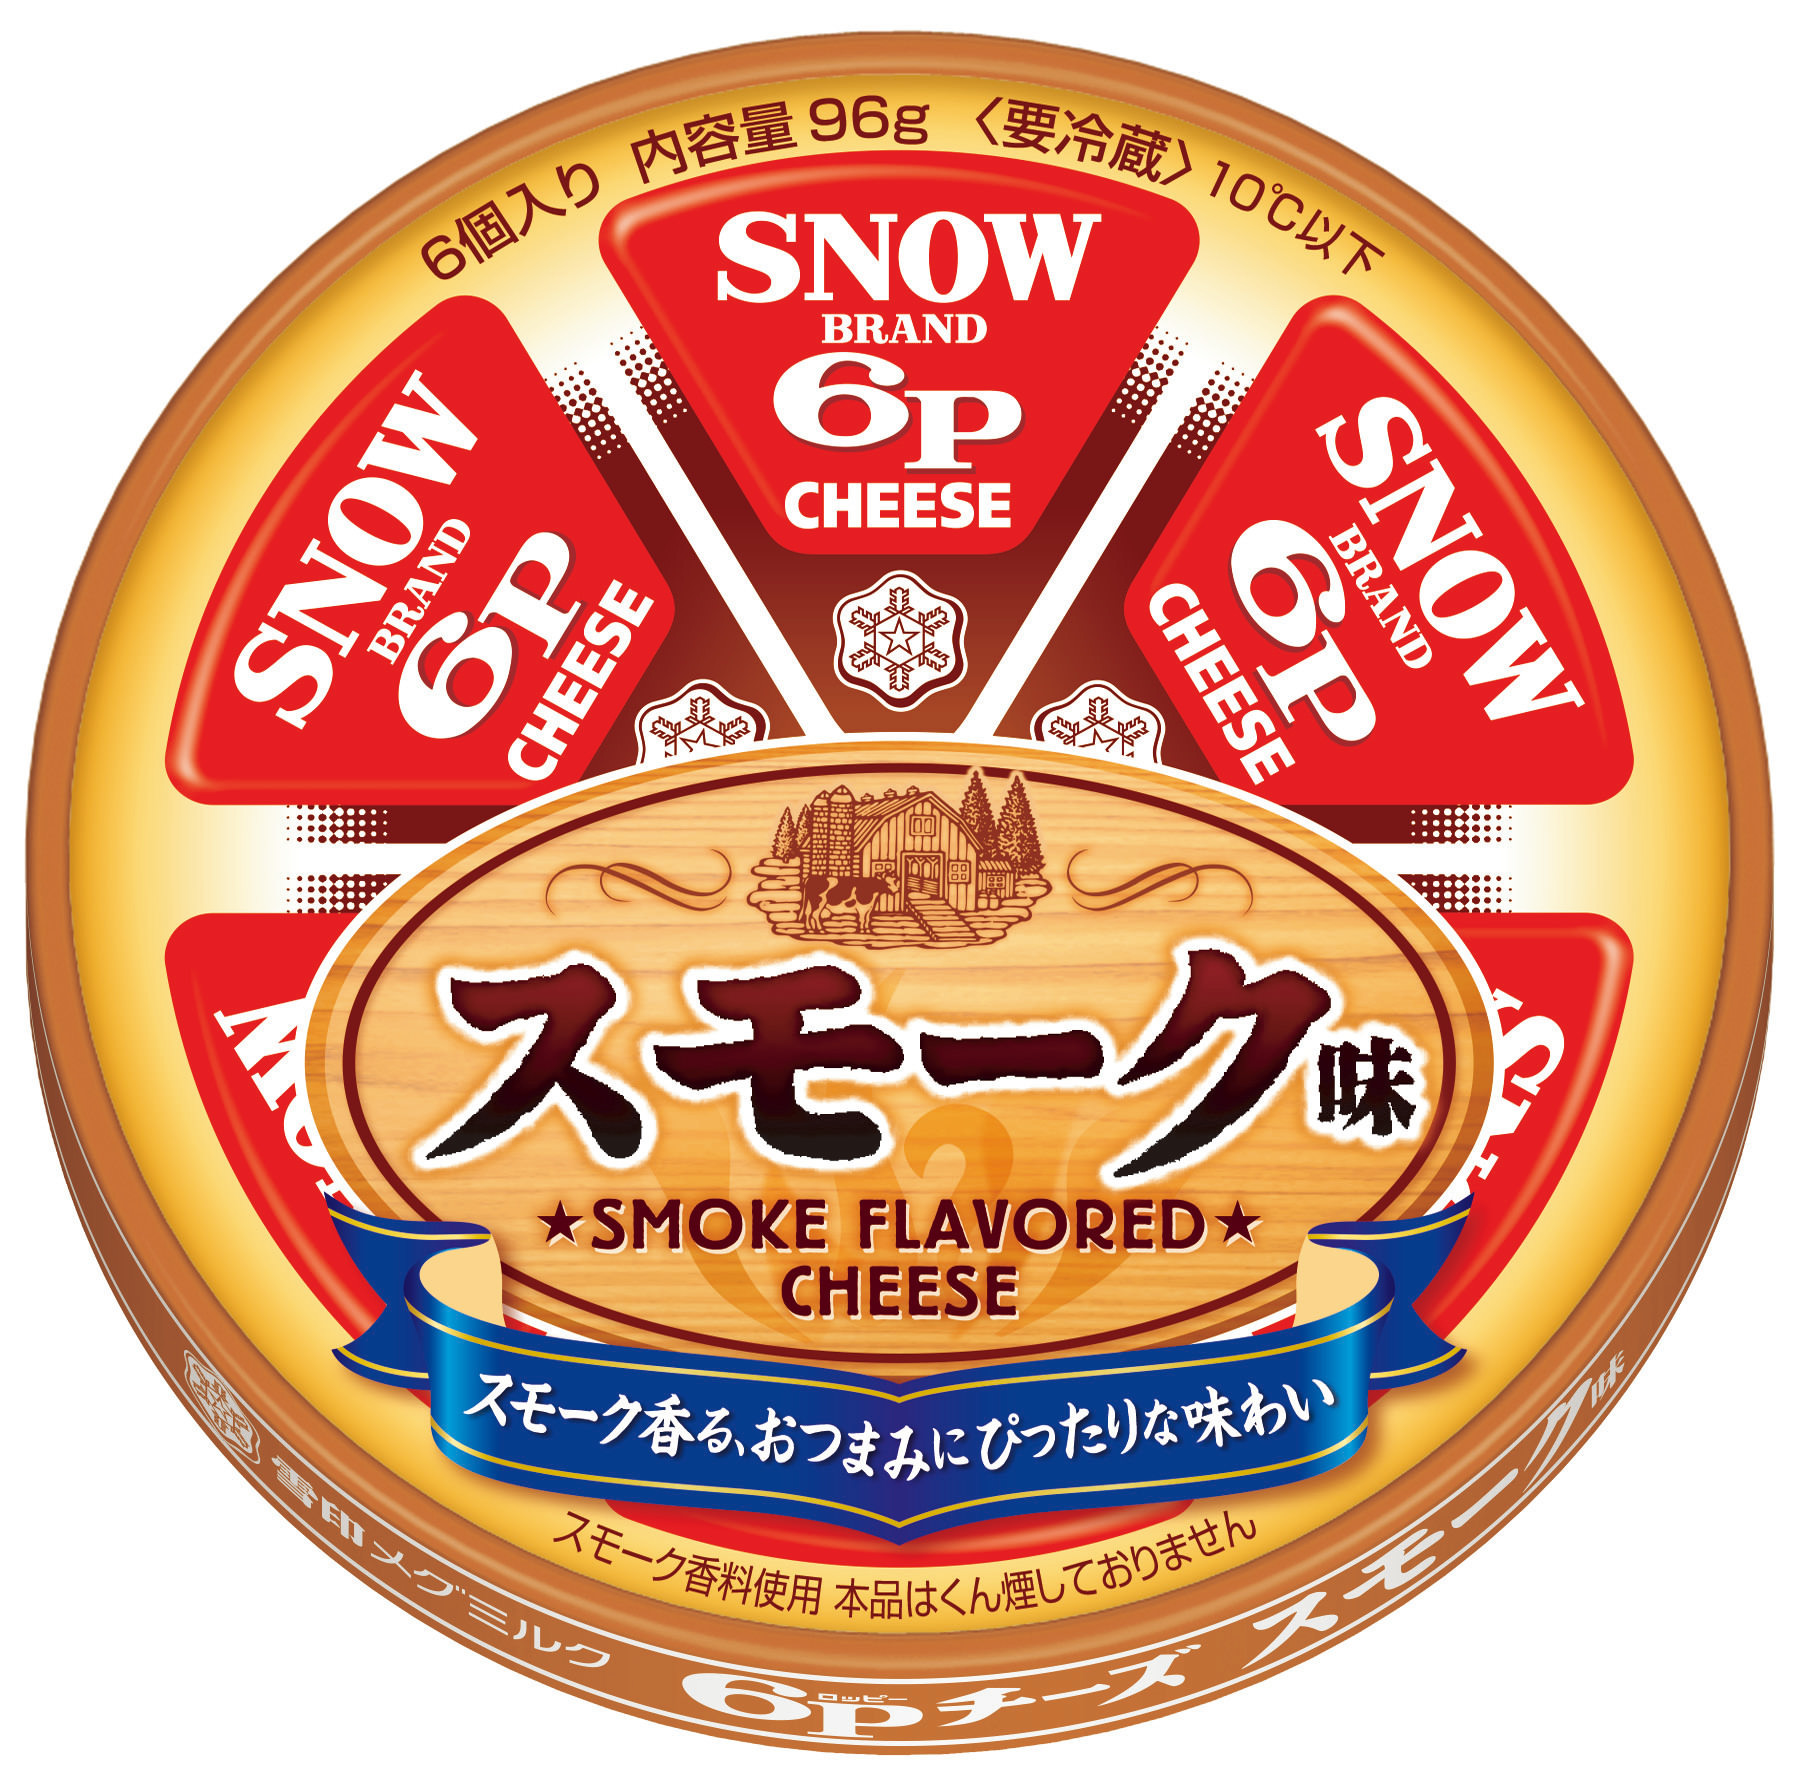 【雪印メグミルク】『６Ｐチーズ 塩分２５％カット』
2019年9月1日（日）より全国にて新発売